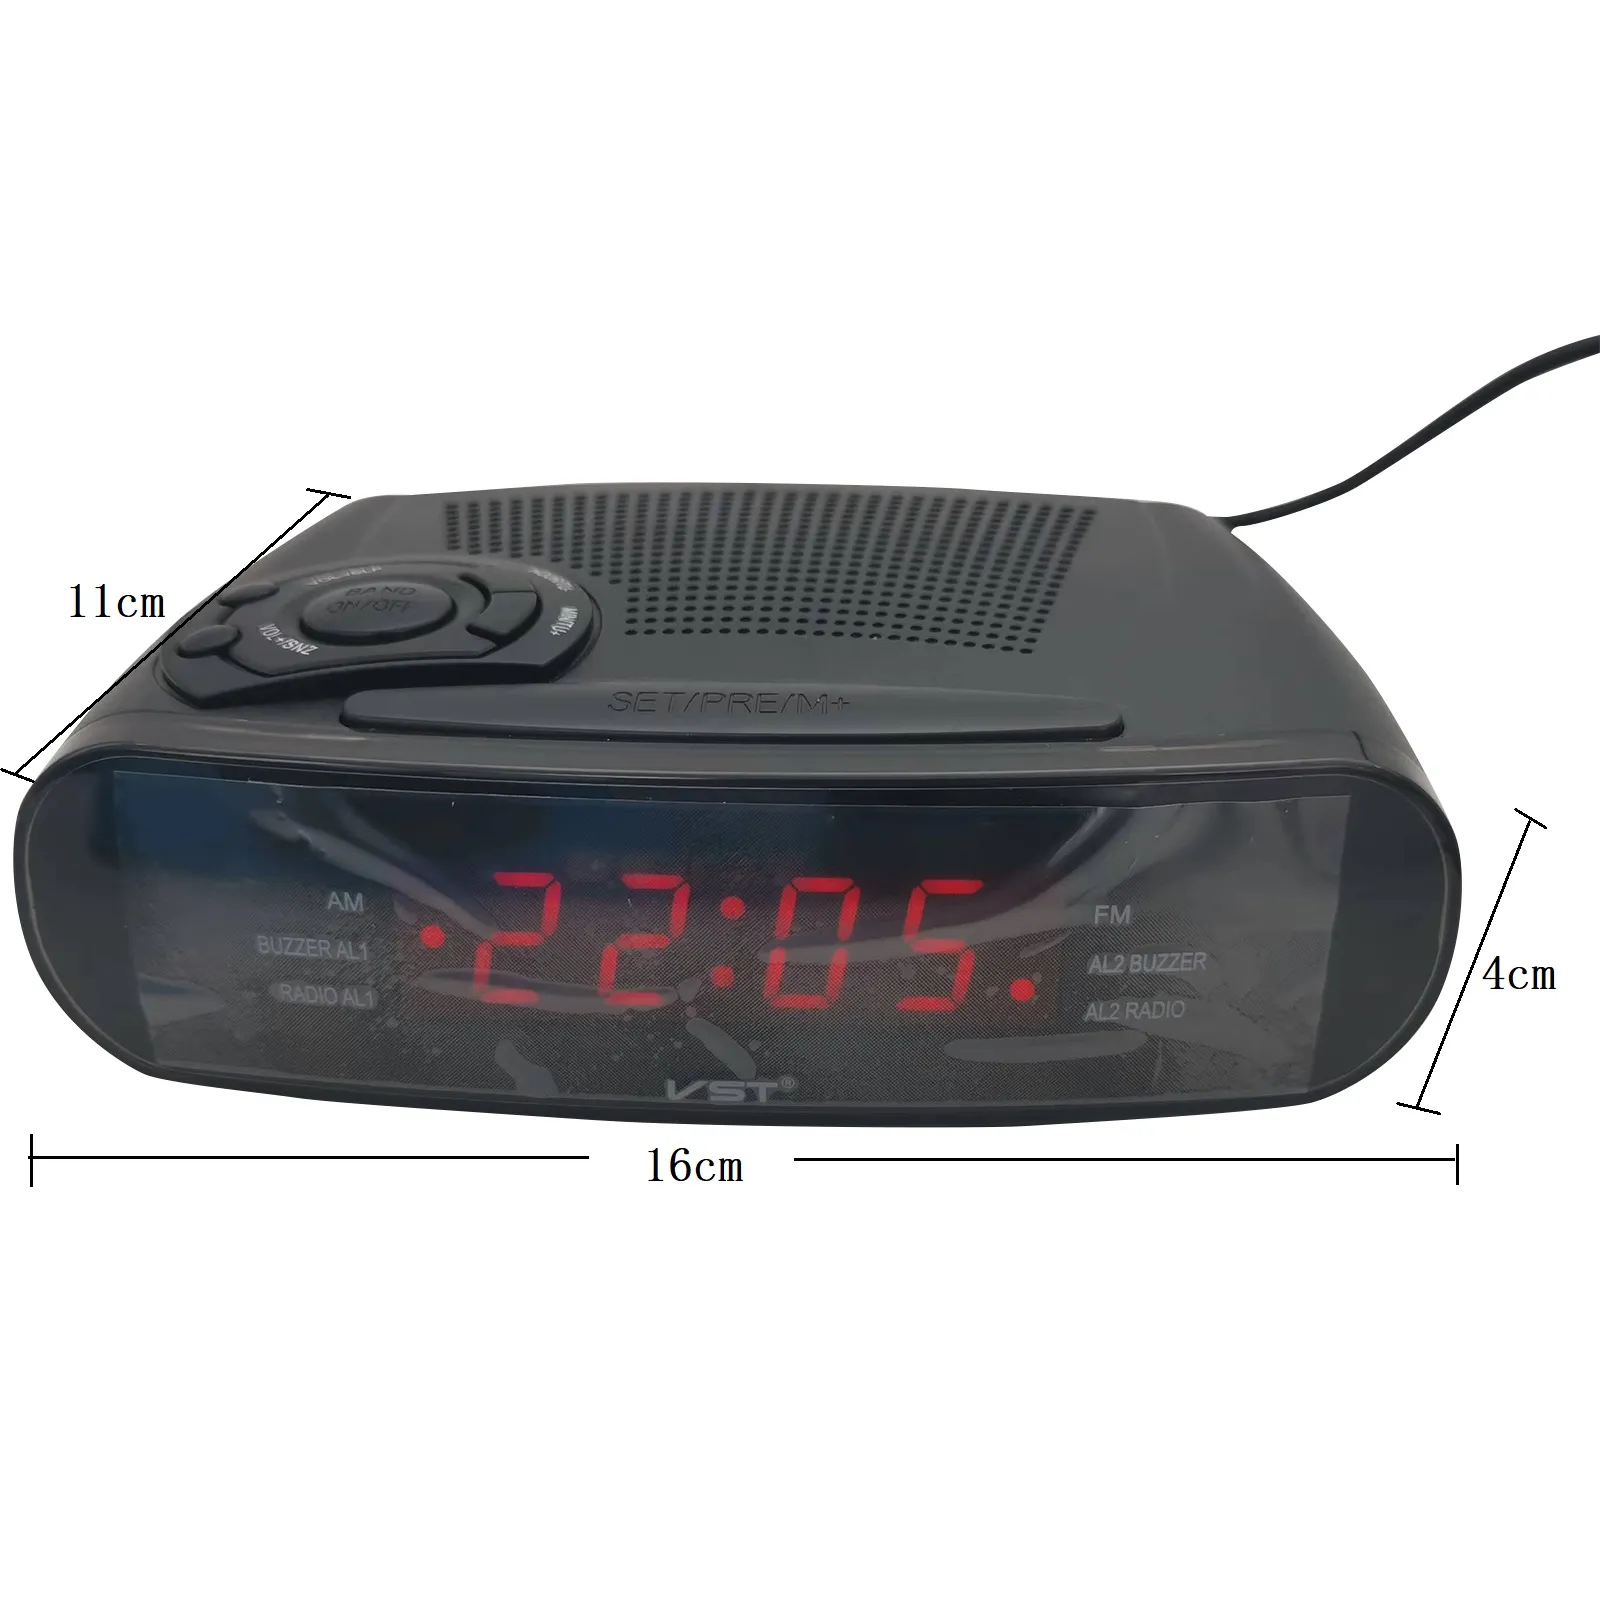 AM/FMデジタルLEDディスプレイ付きの目覚まし時計ラジオ、スヌーズ、バッテリーバックアップ機能